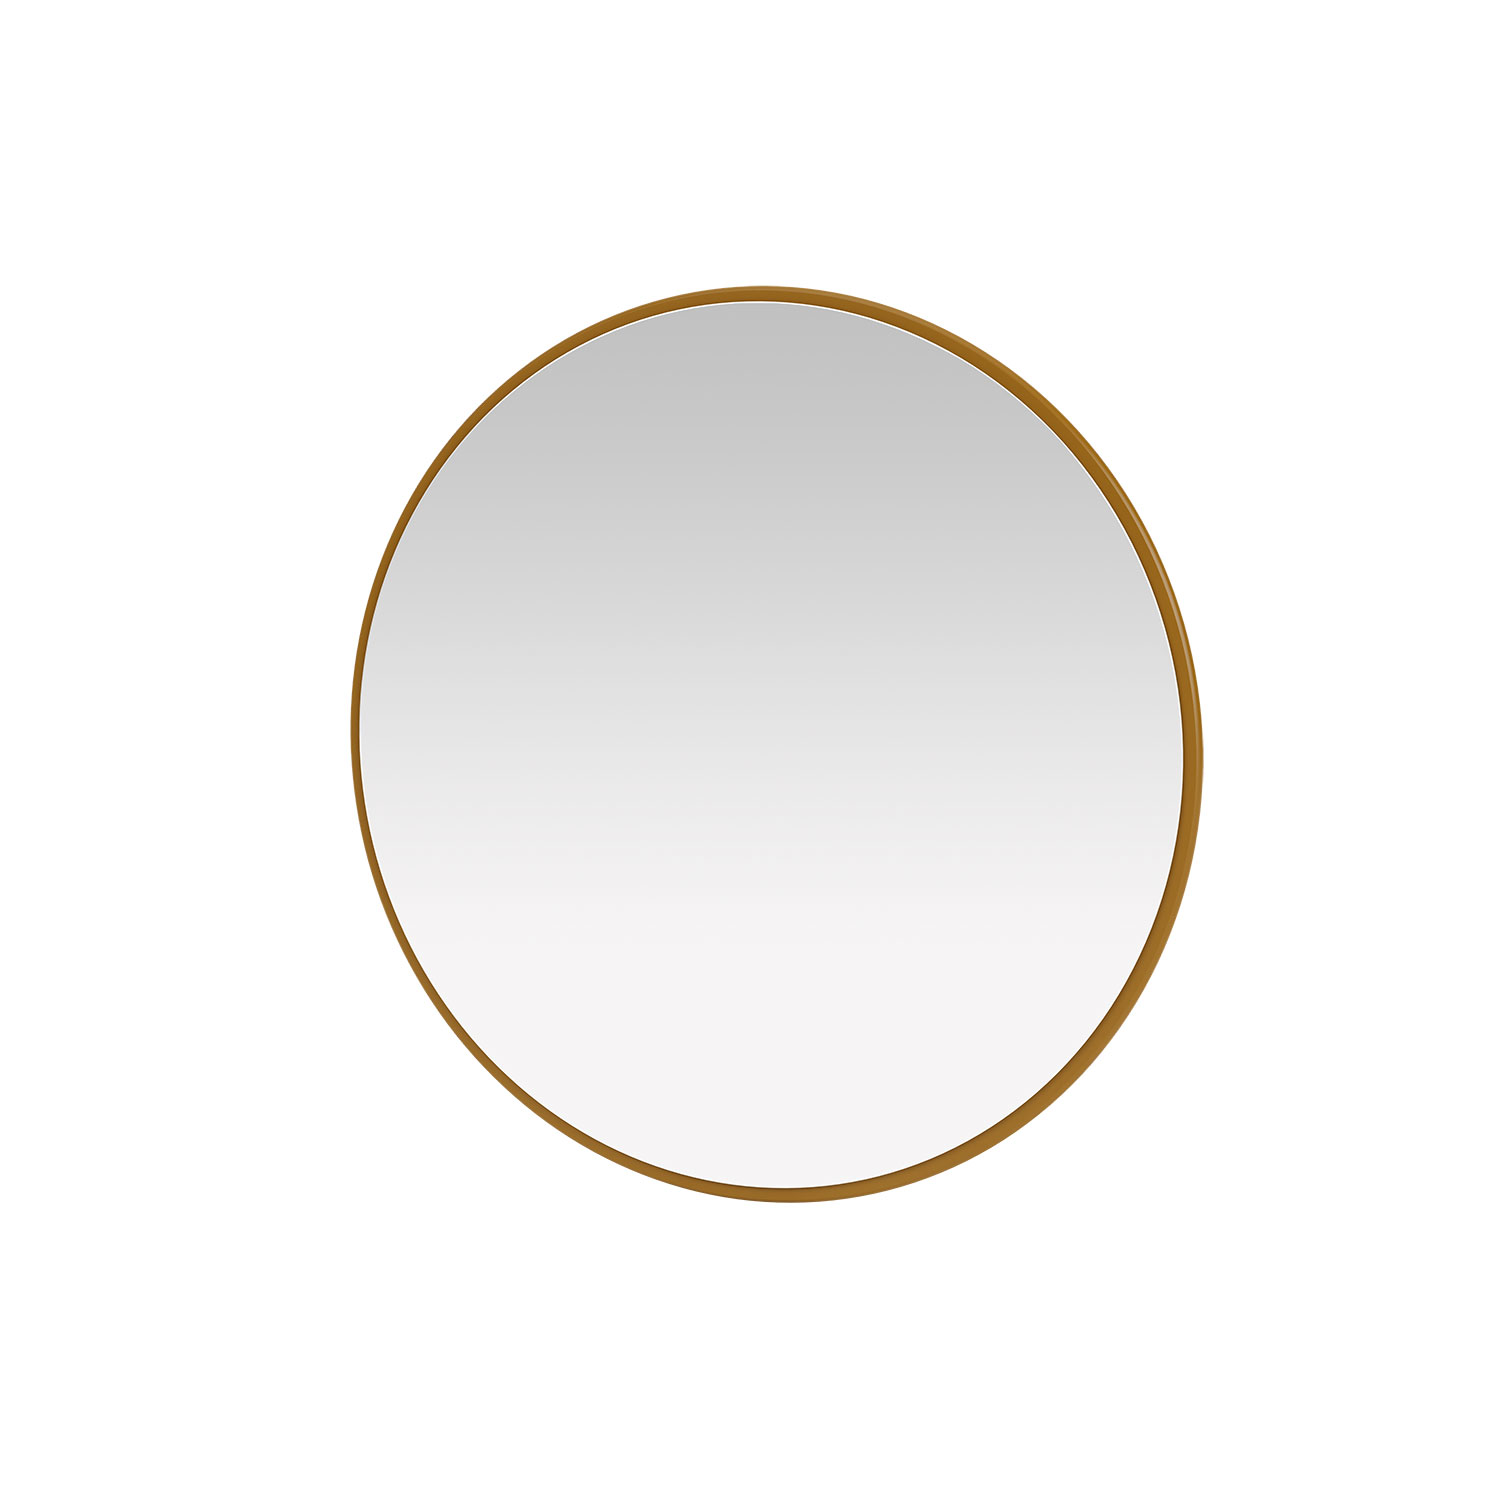 AROUND mirror, 12 colors